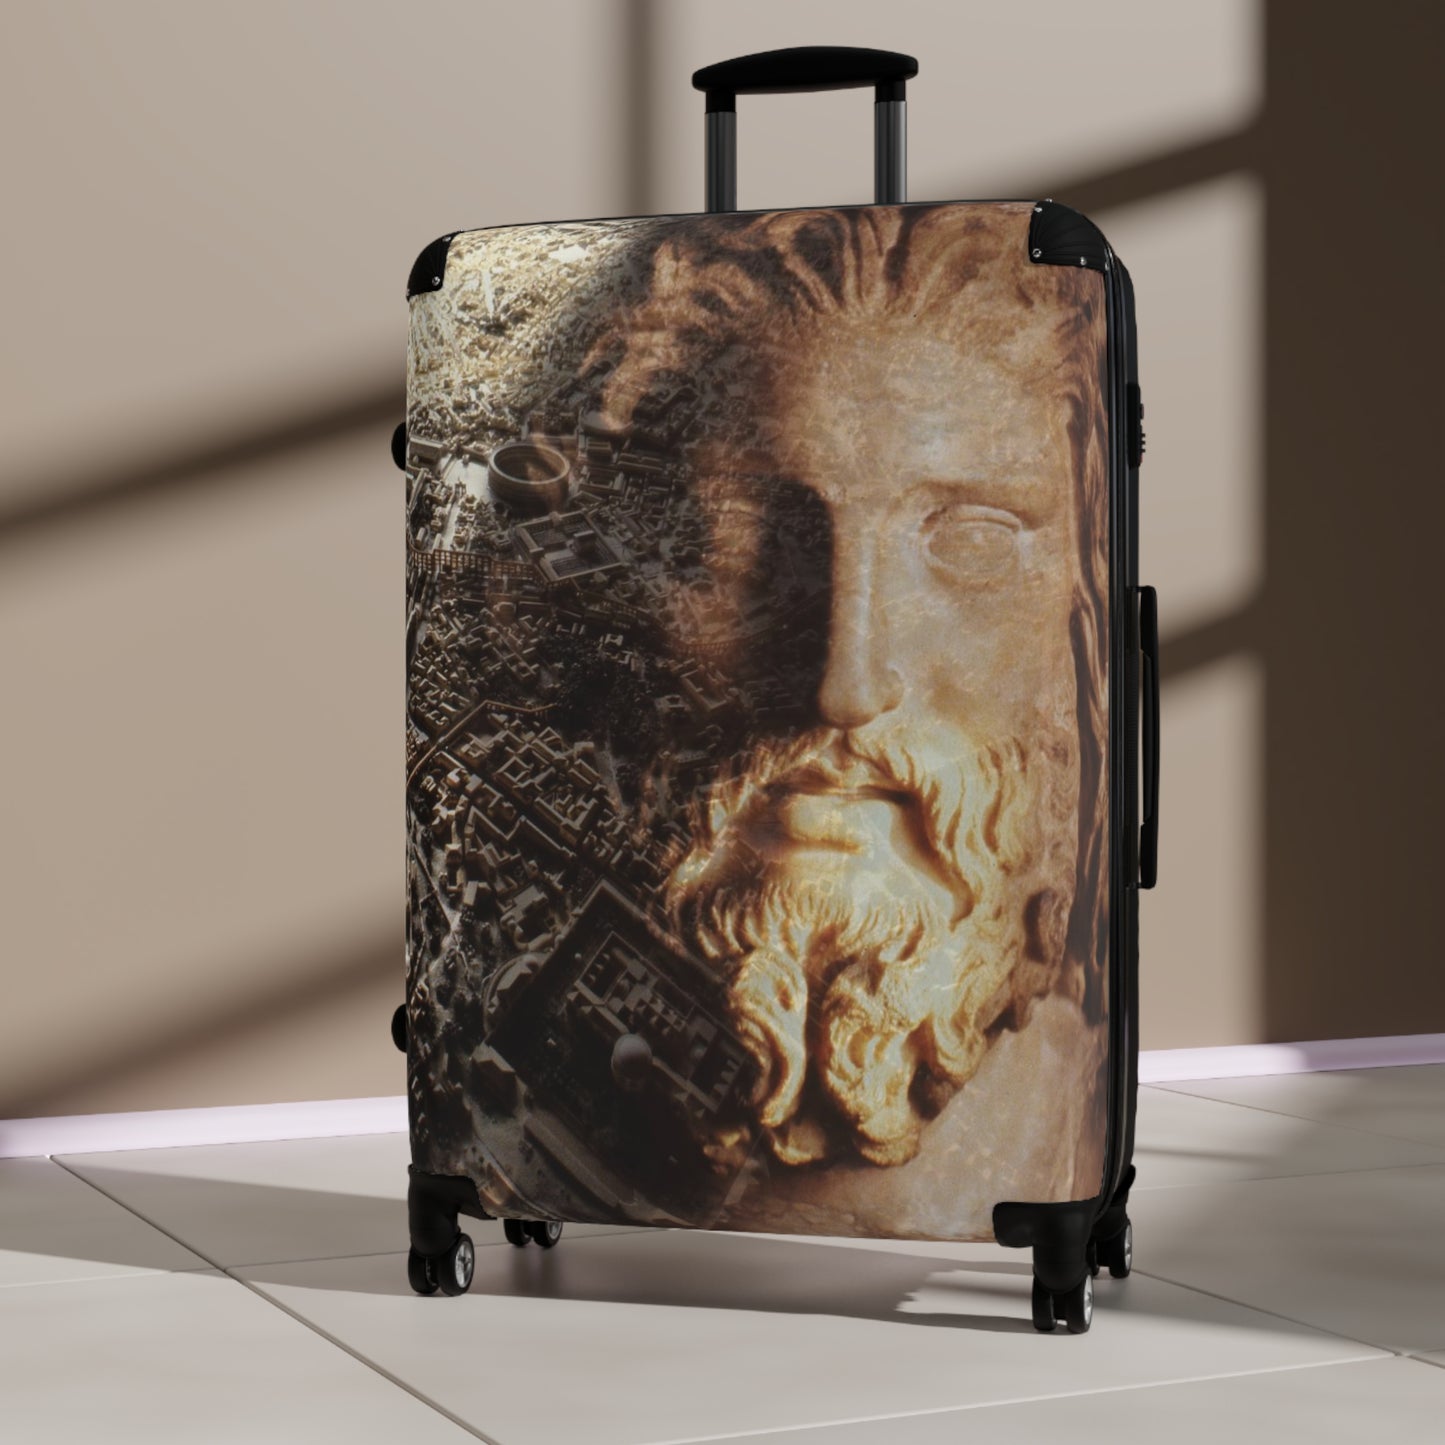 Rome & Its Capitoline Jupiter Luggage